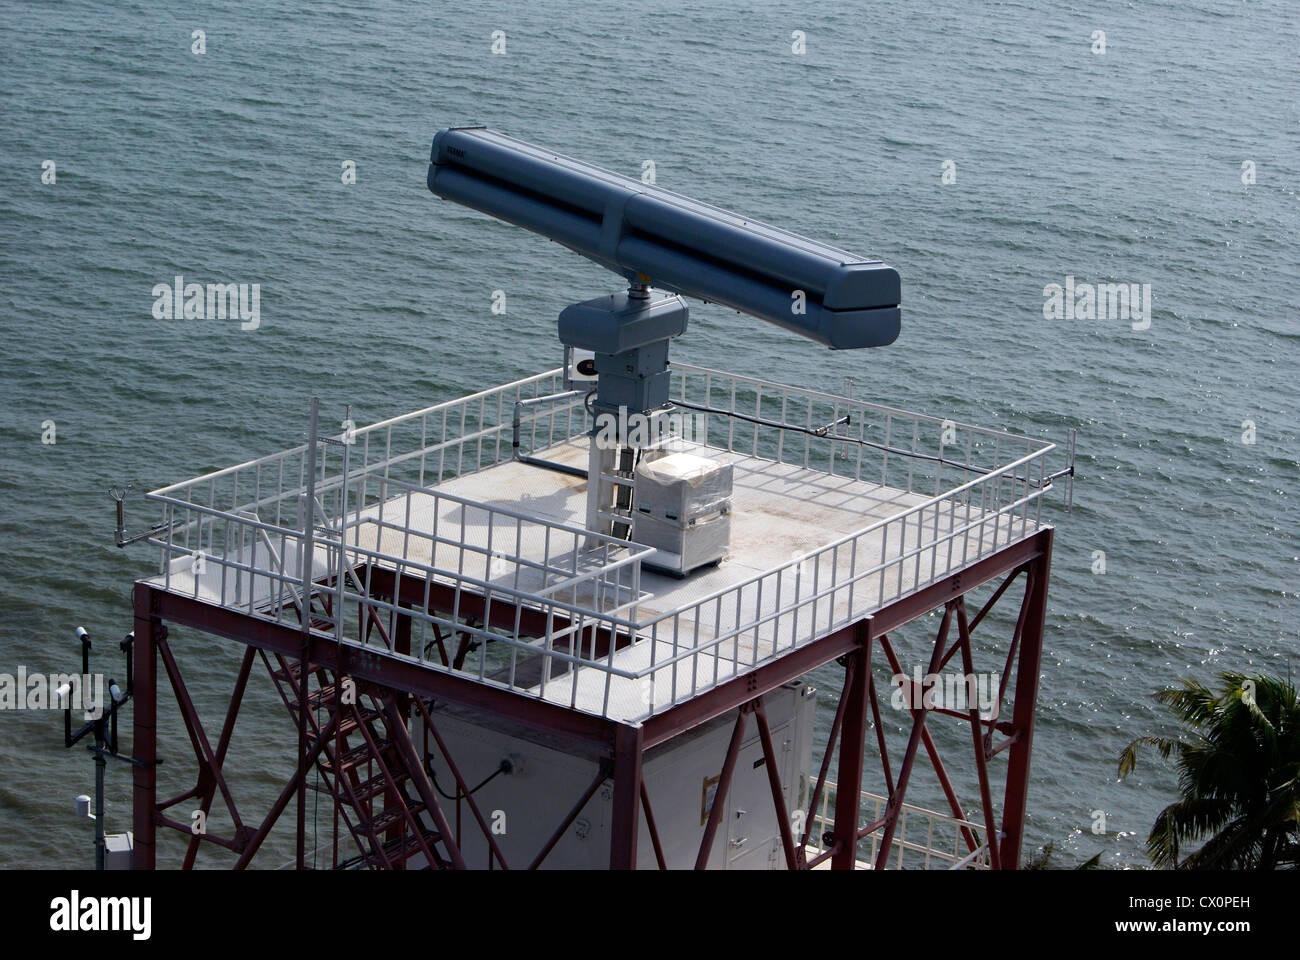 Moderno Radar de Vigilancia en el mar Arábigo Kerala región costera para vigilar los barcos y detectar barcos piratas Foto de stock